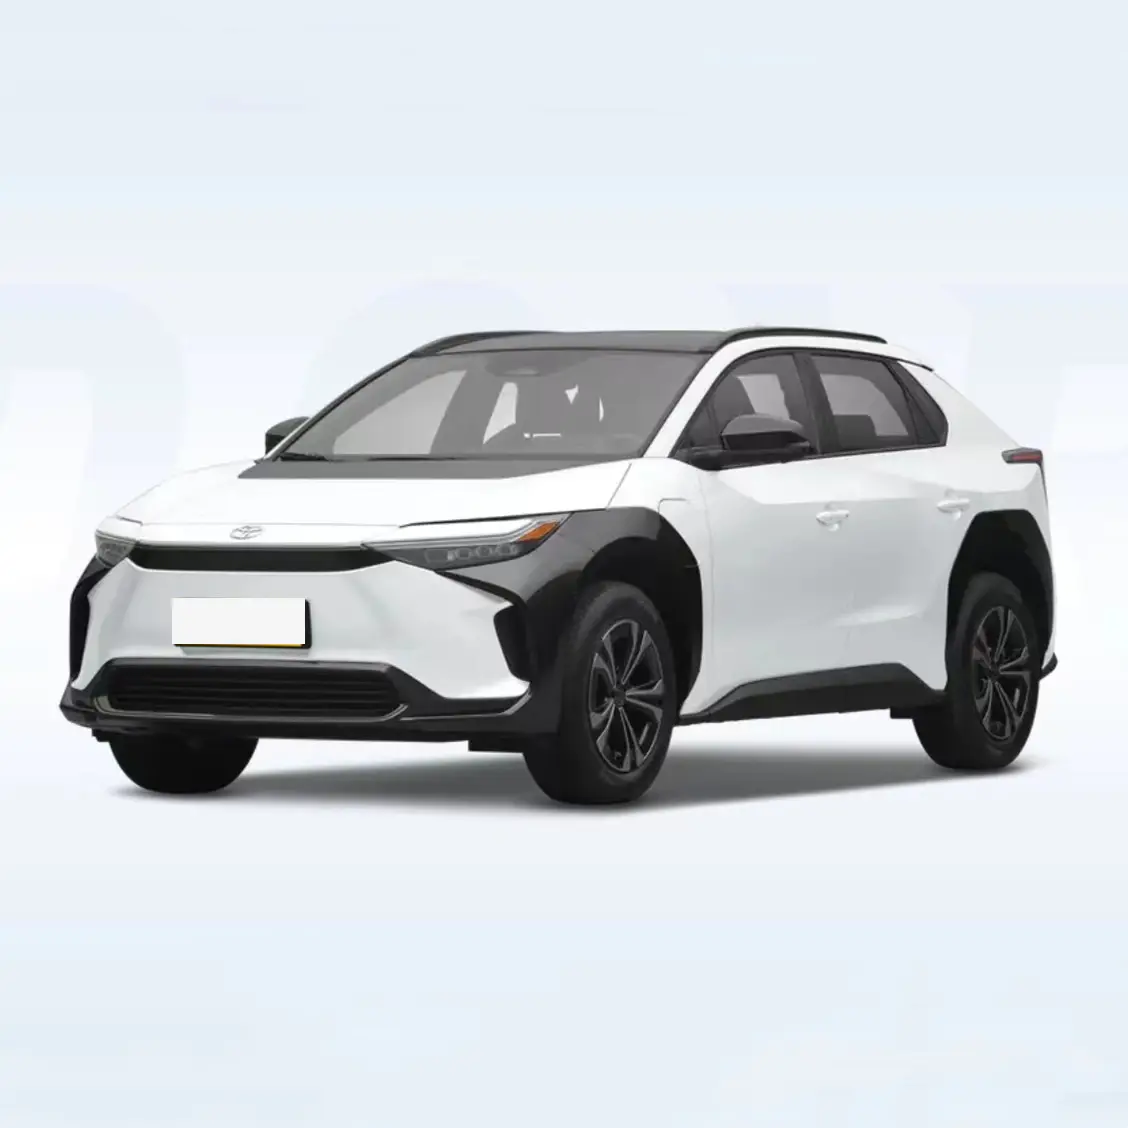 2022 x-mode motor ganda penggerak empat roda Ultra 20 inci ban mobil listrik Toyota bZ4X jangkauan listrik 500km dengan pengisian daya Cepat